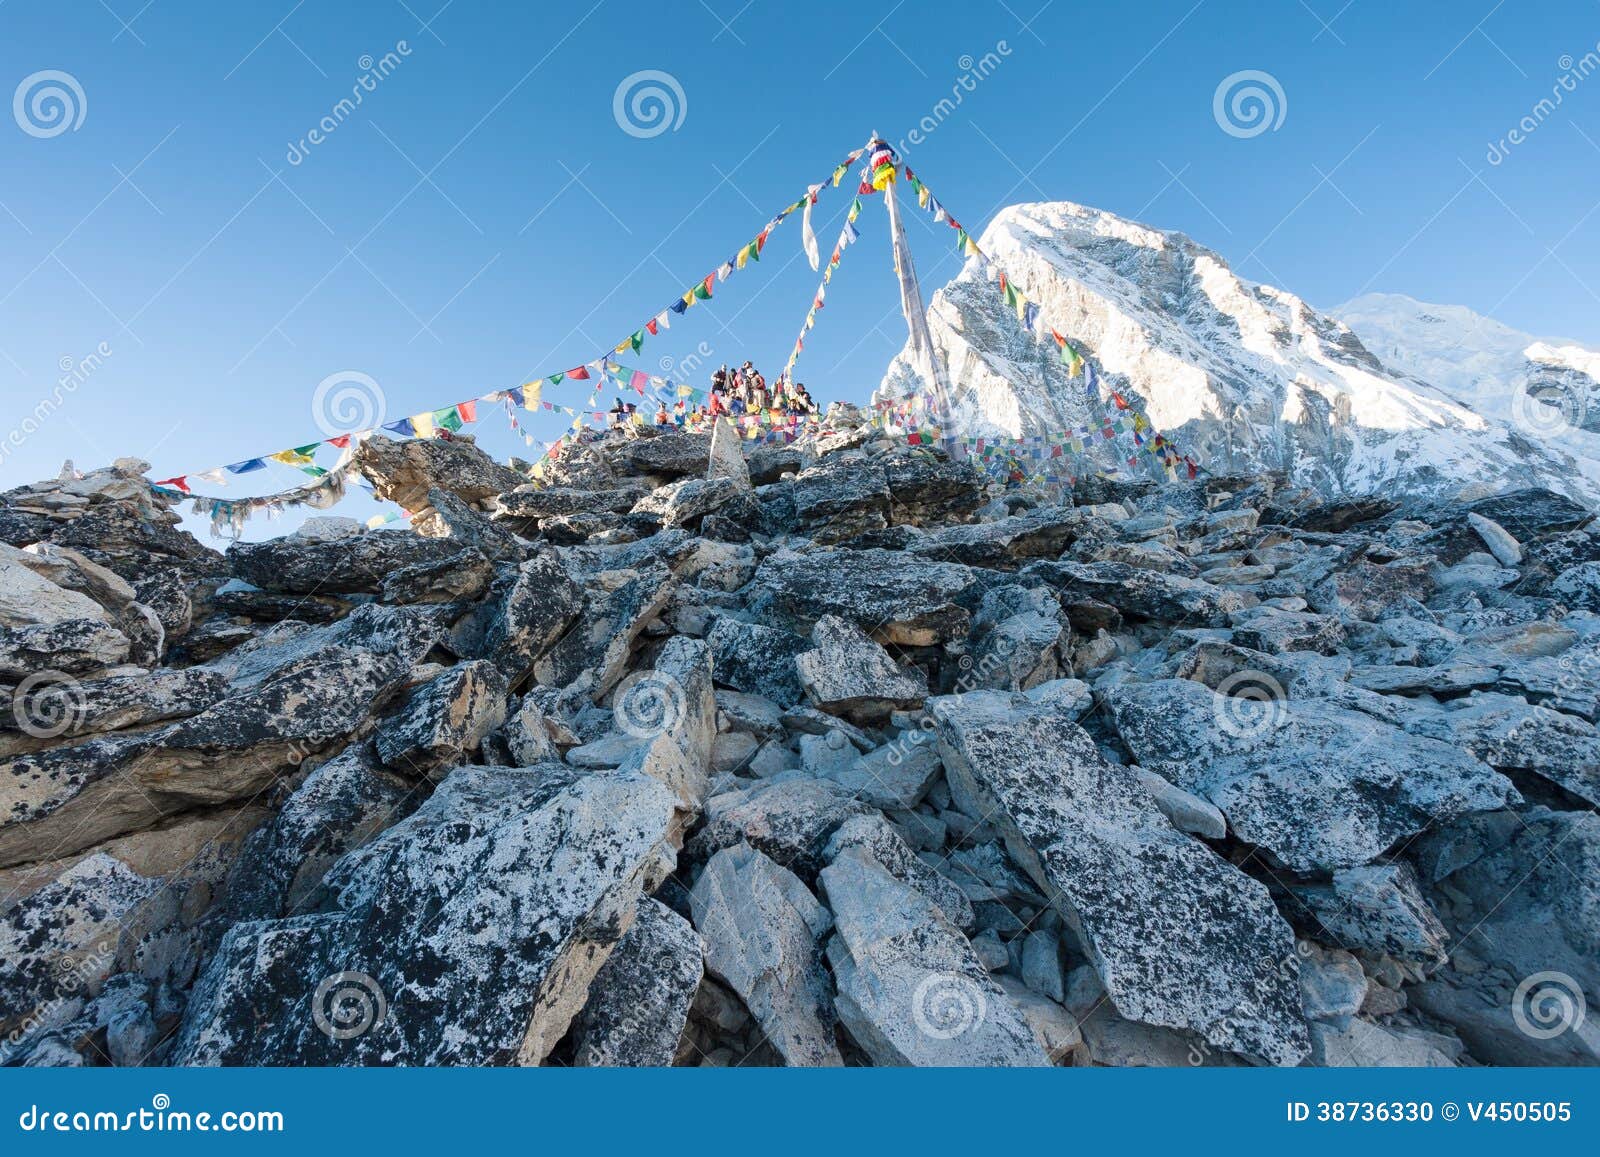 summit of kala patthar